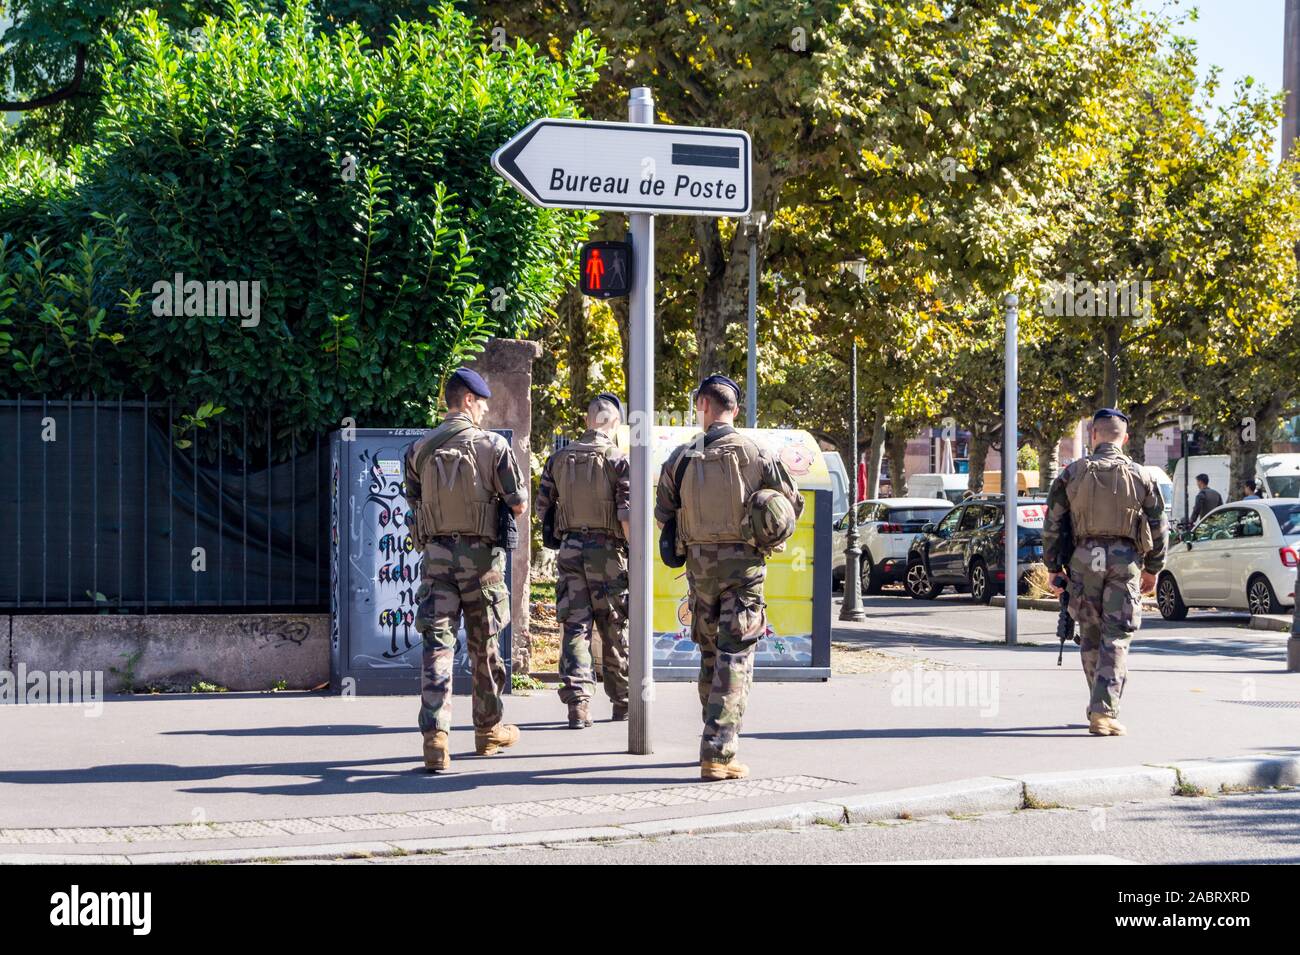 Les soldats de l'Eurocorps armés sur la patrouille anti-terroristes, place Broglie, Strasbourg, Alsace, Grand Est, France Banque D'Images